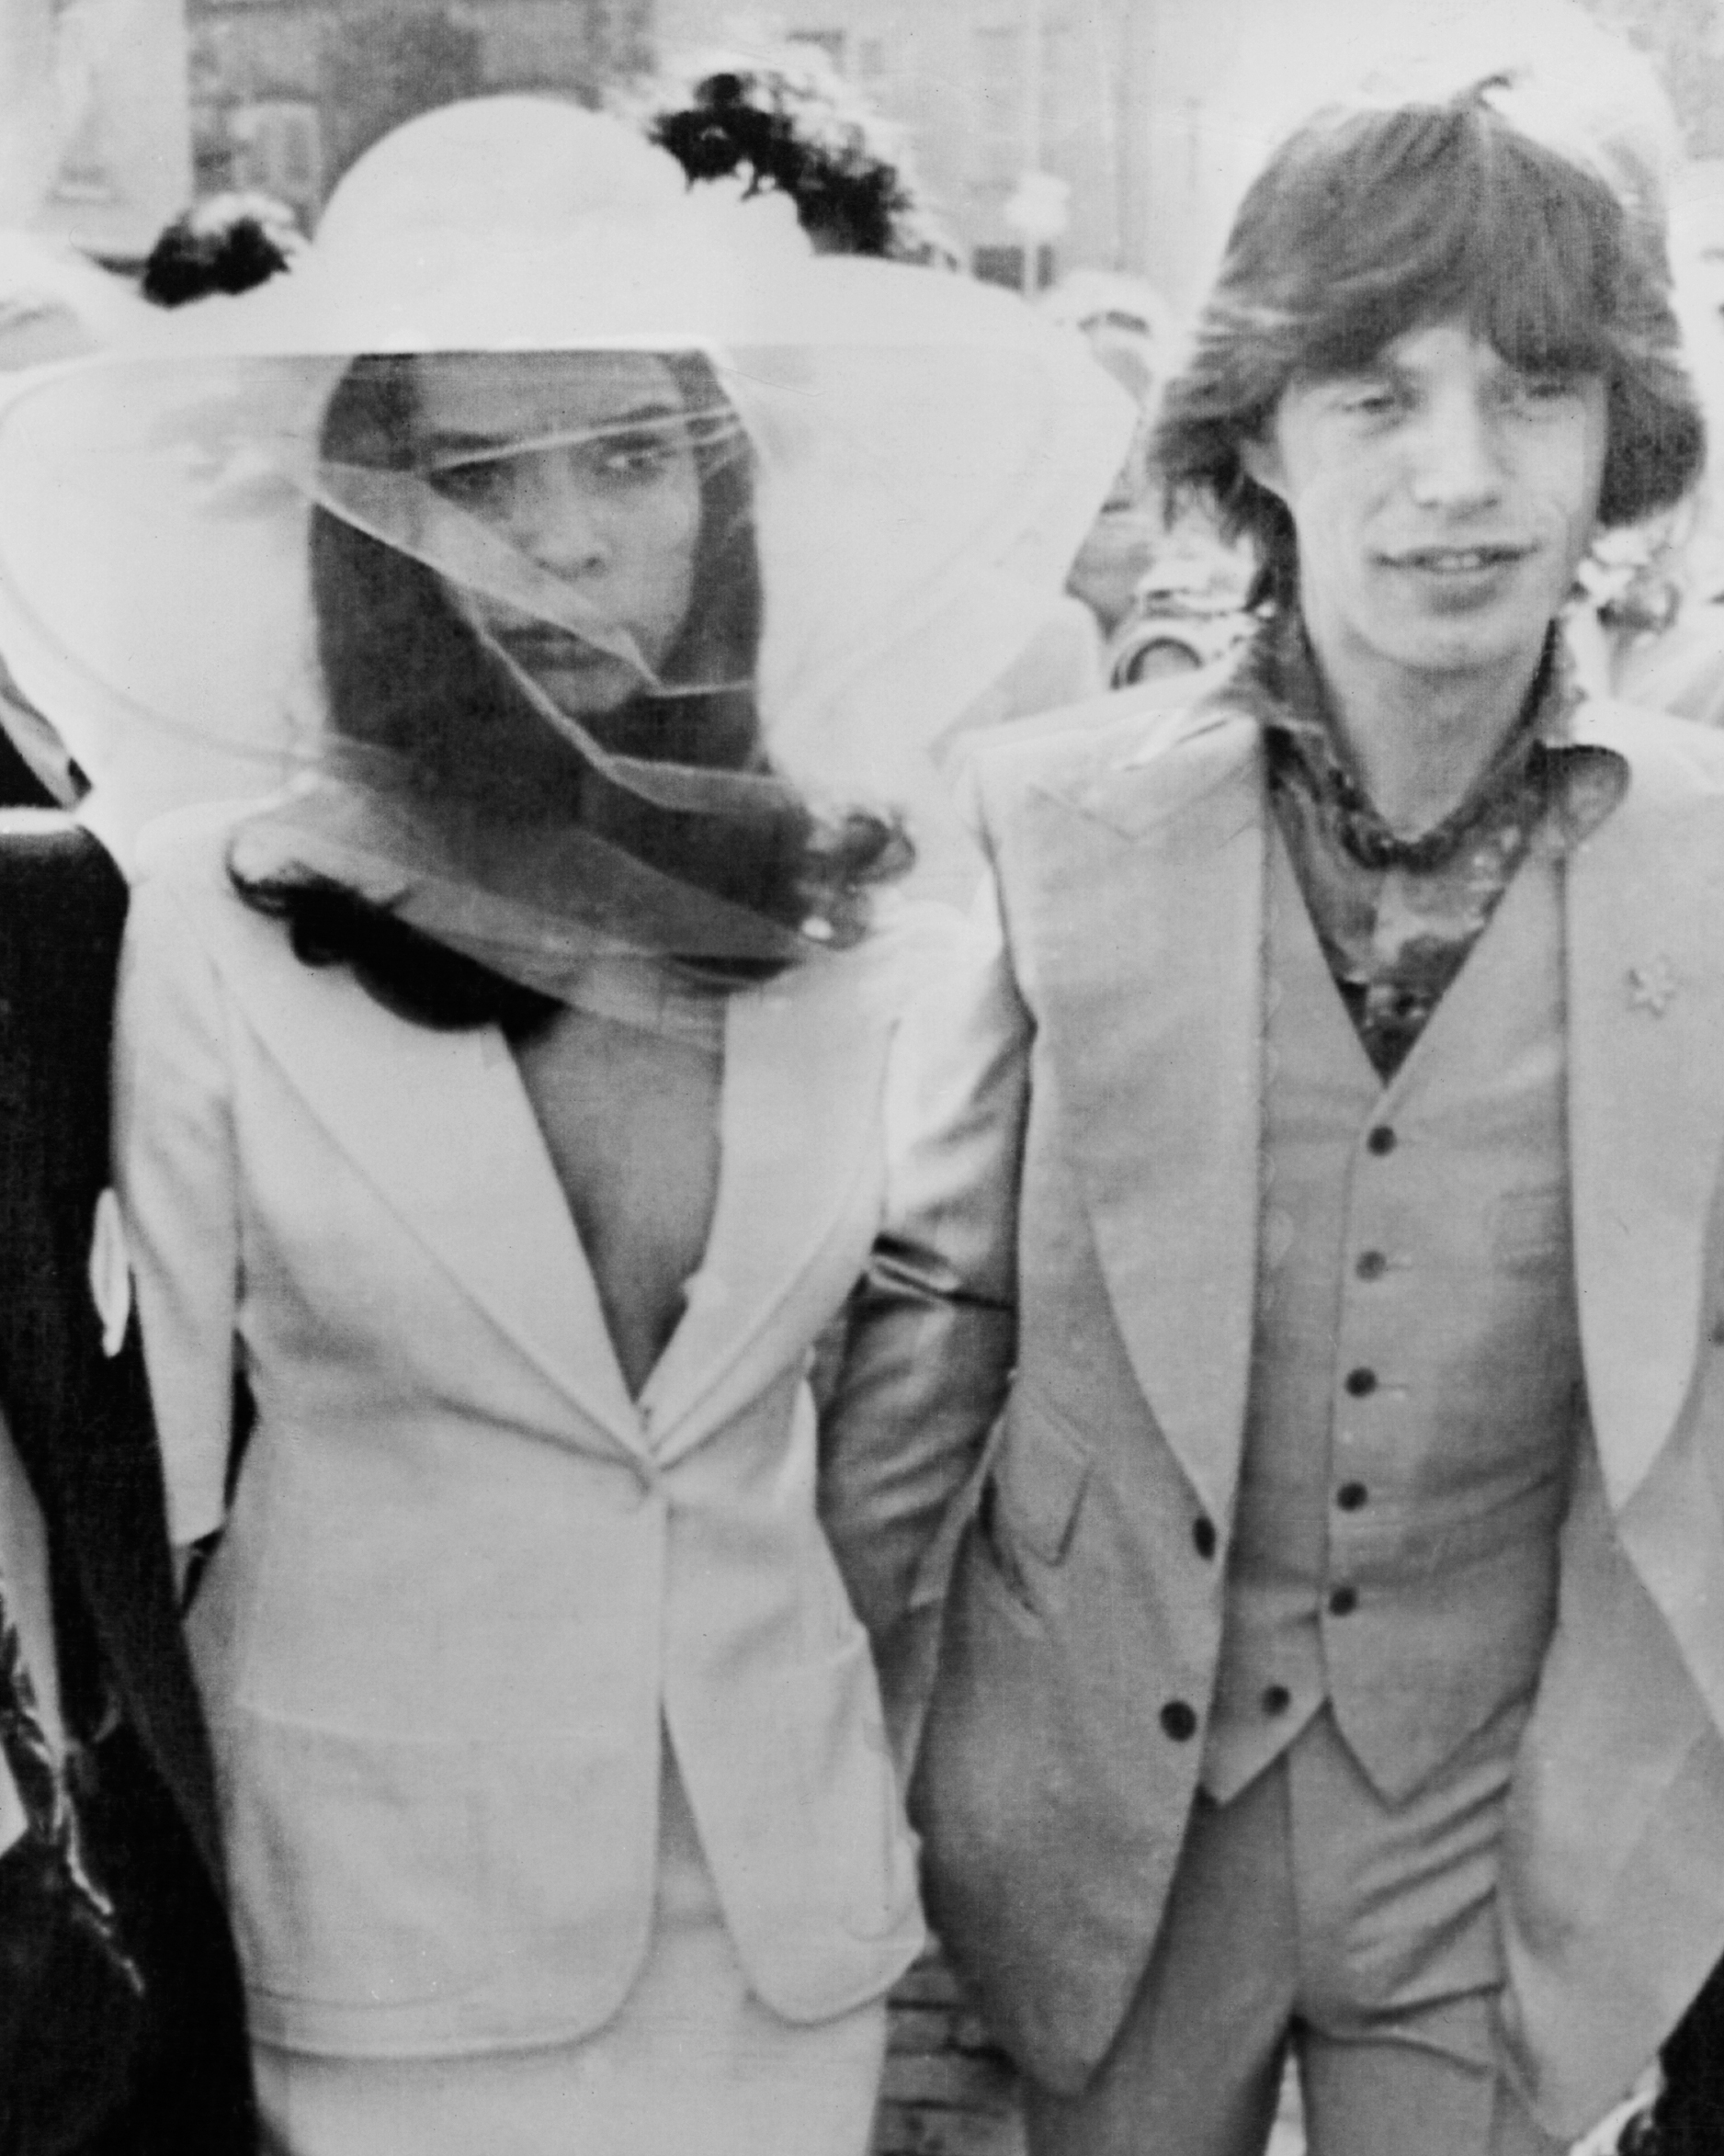 The Most Iconic Rock Star Wedding Photos | Martha Stewart Weddings